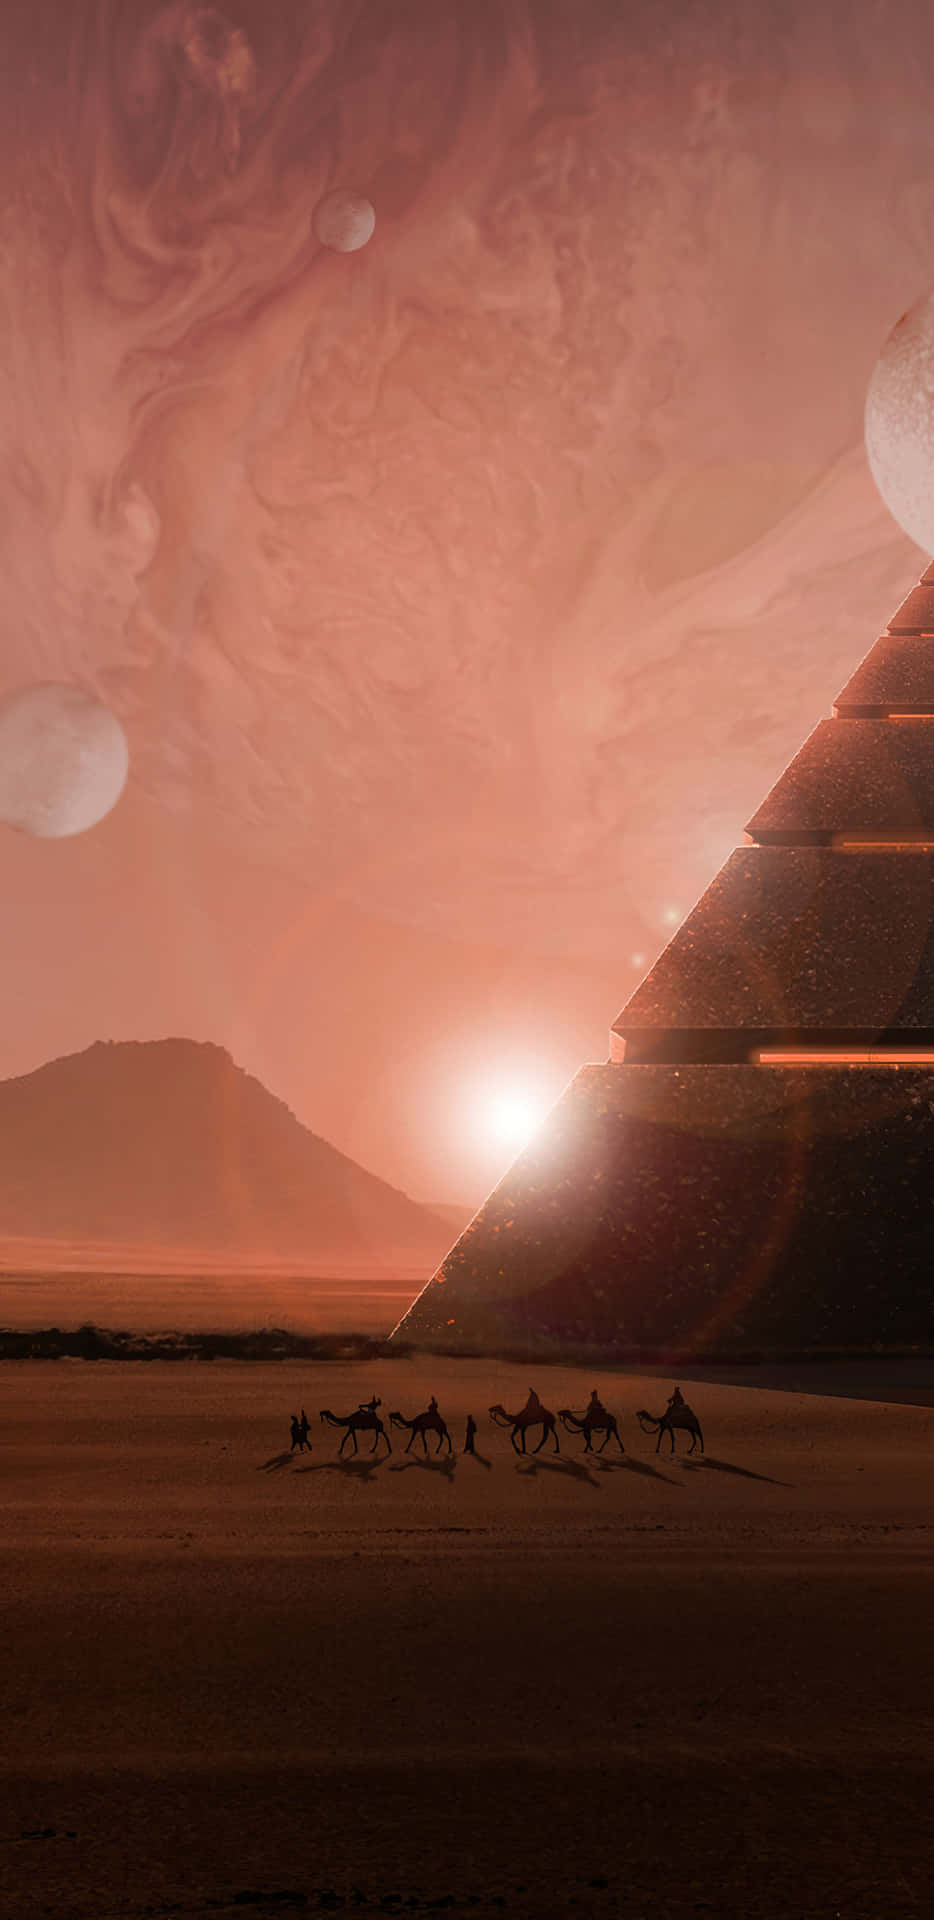 Pirâmidede Ficção Científica Da Lua. Papel de Parede